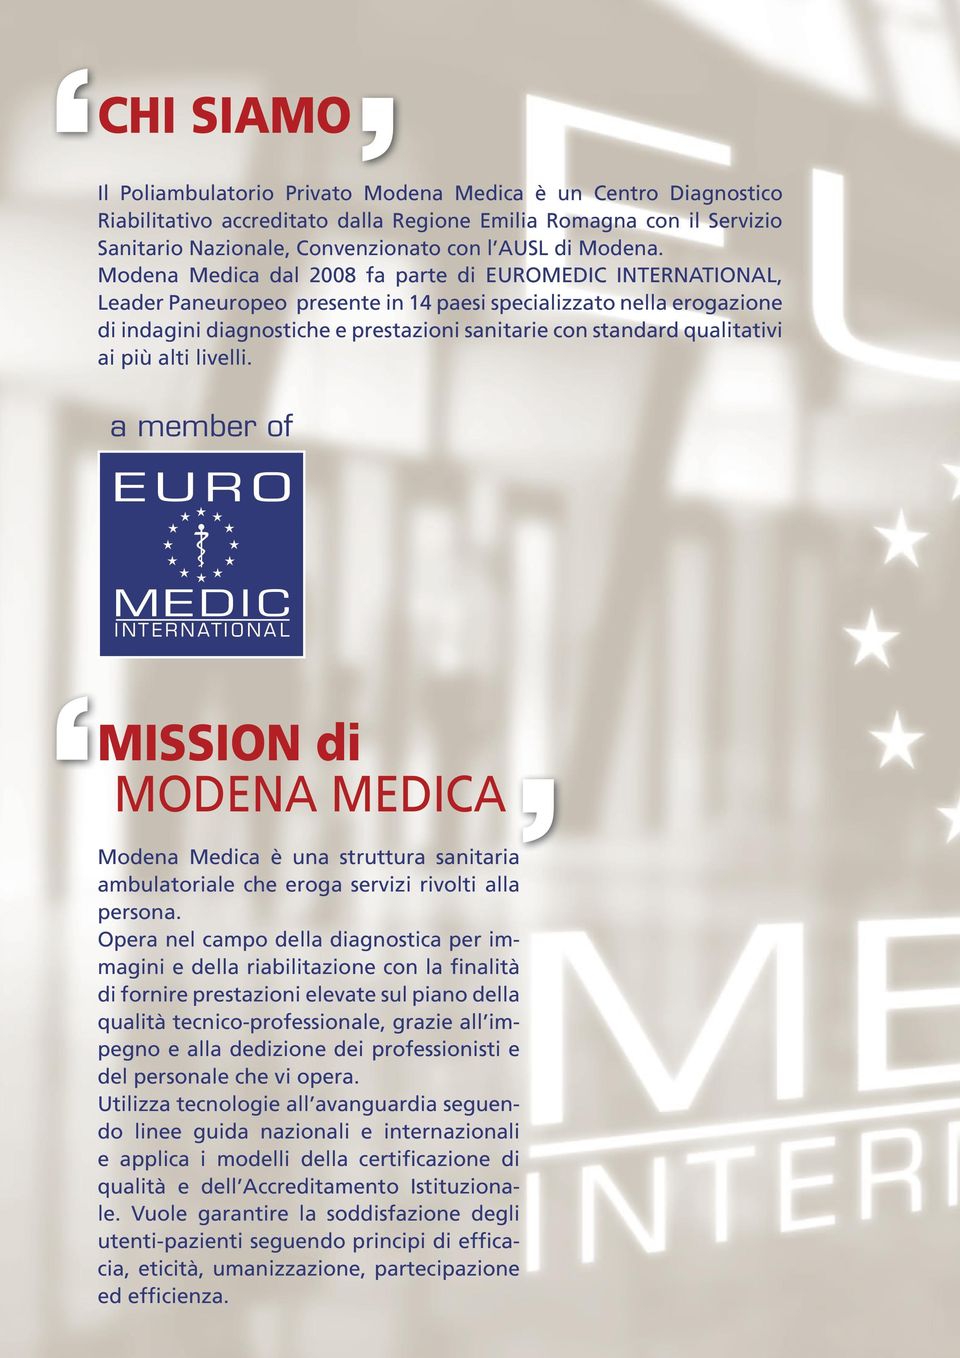 Modena Medica dal 2008 fa parte di EUROMEDIC INTERNATIONAL, Leader Paneuropeo presente in 14 paesi specializzato nella erogazione di indagini diagnostiche e prestazioni sanitarie con standard